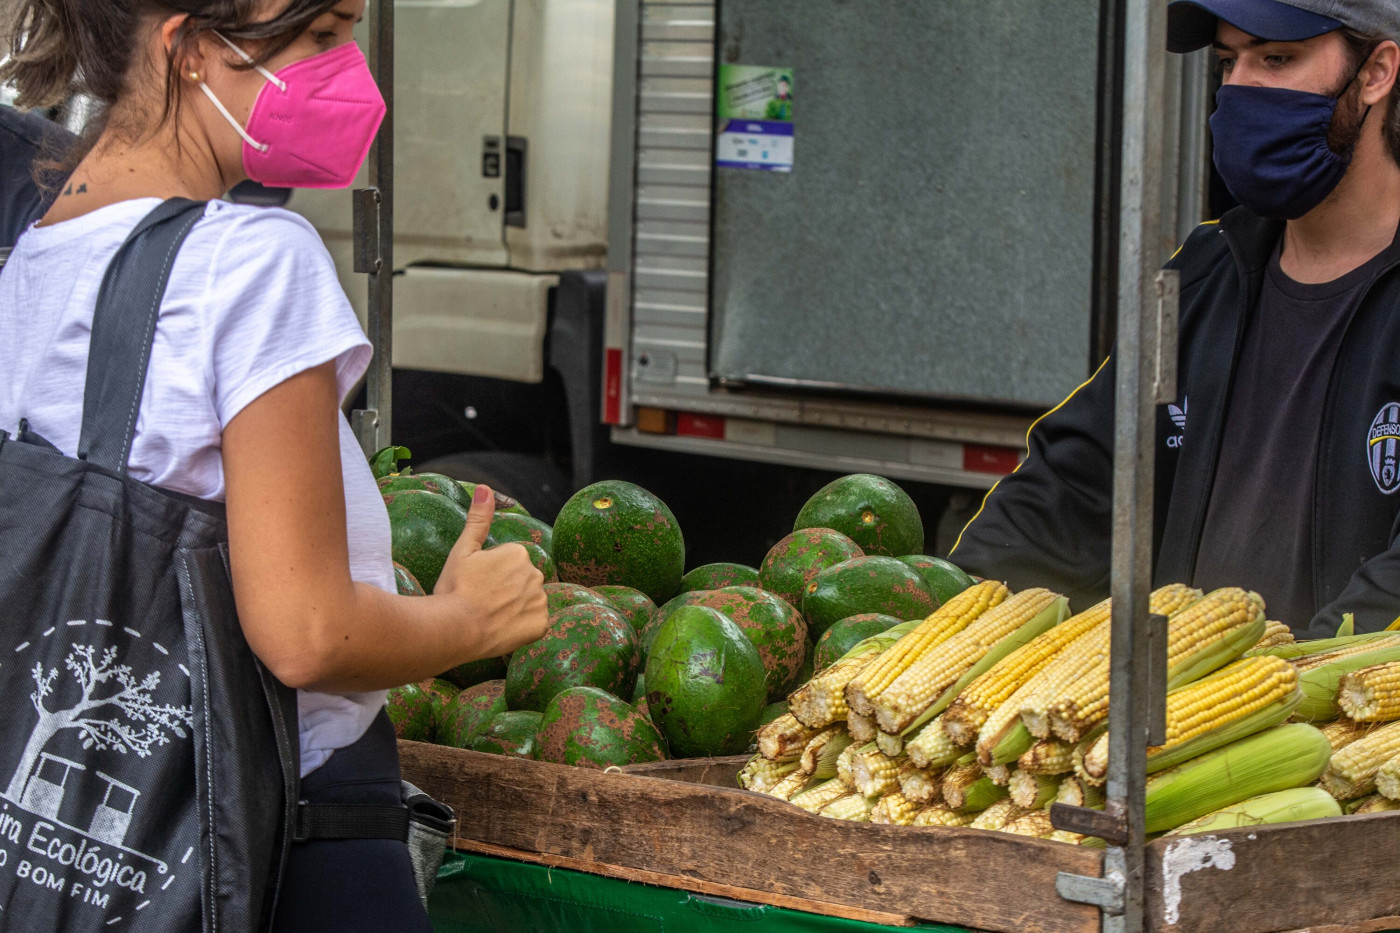 Cliente de máscara observa frutas e legumes em barraca de fruta